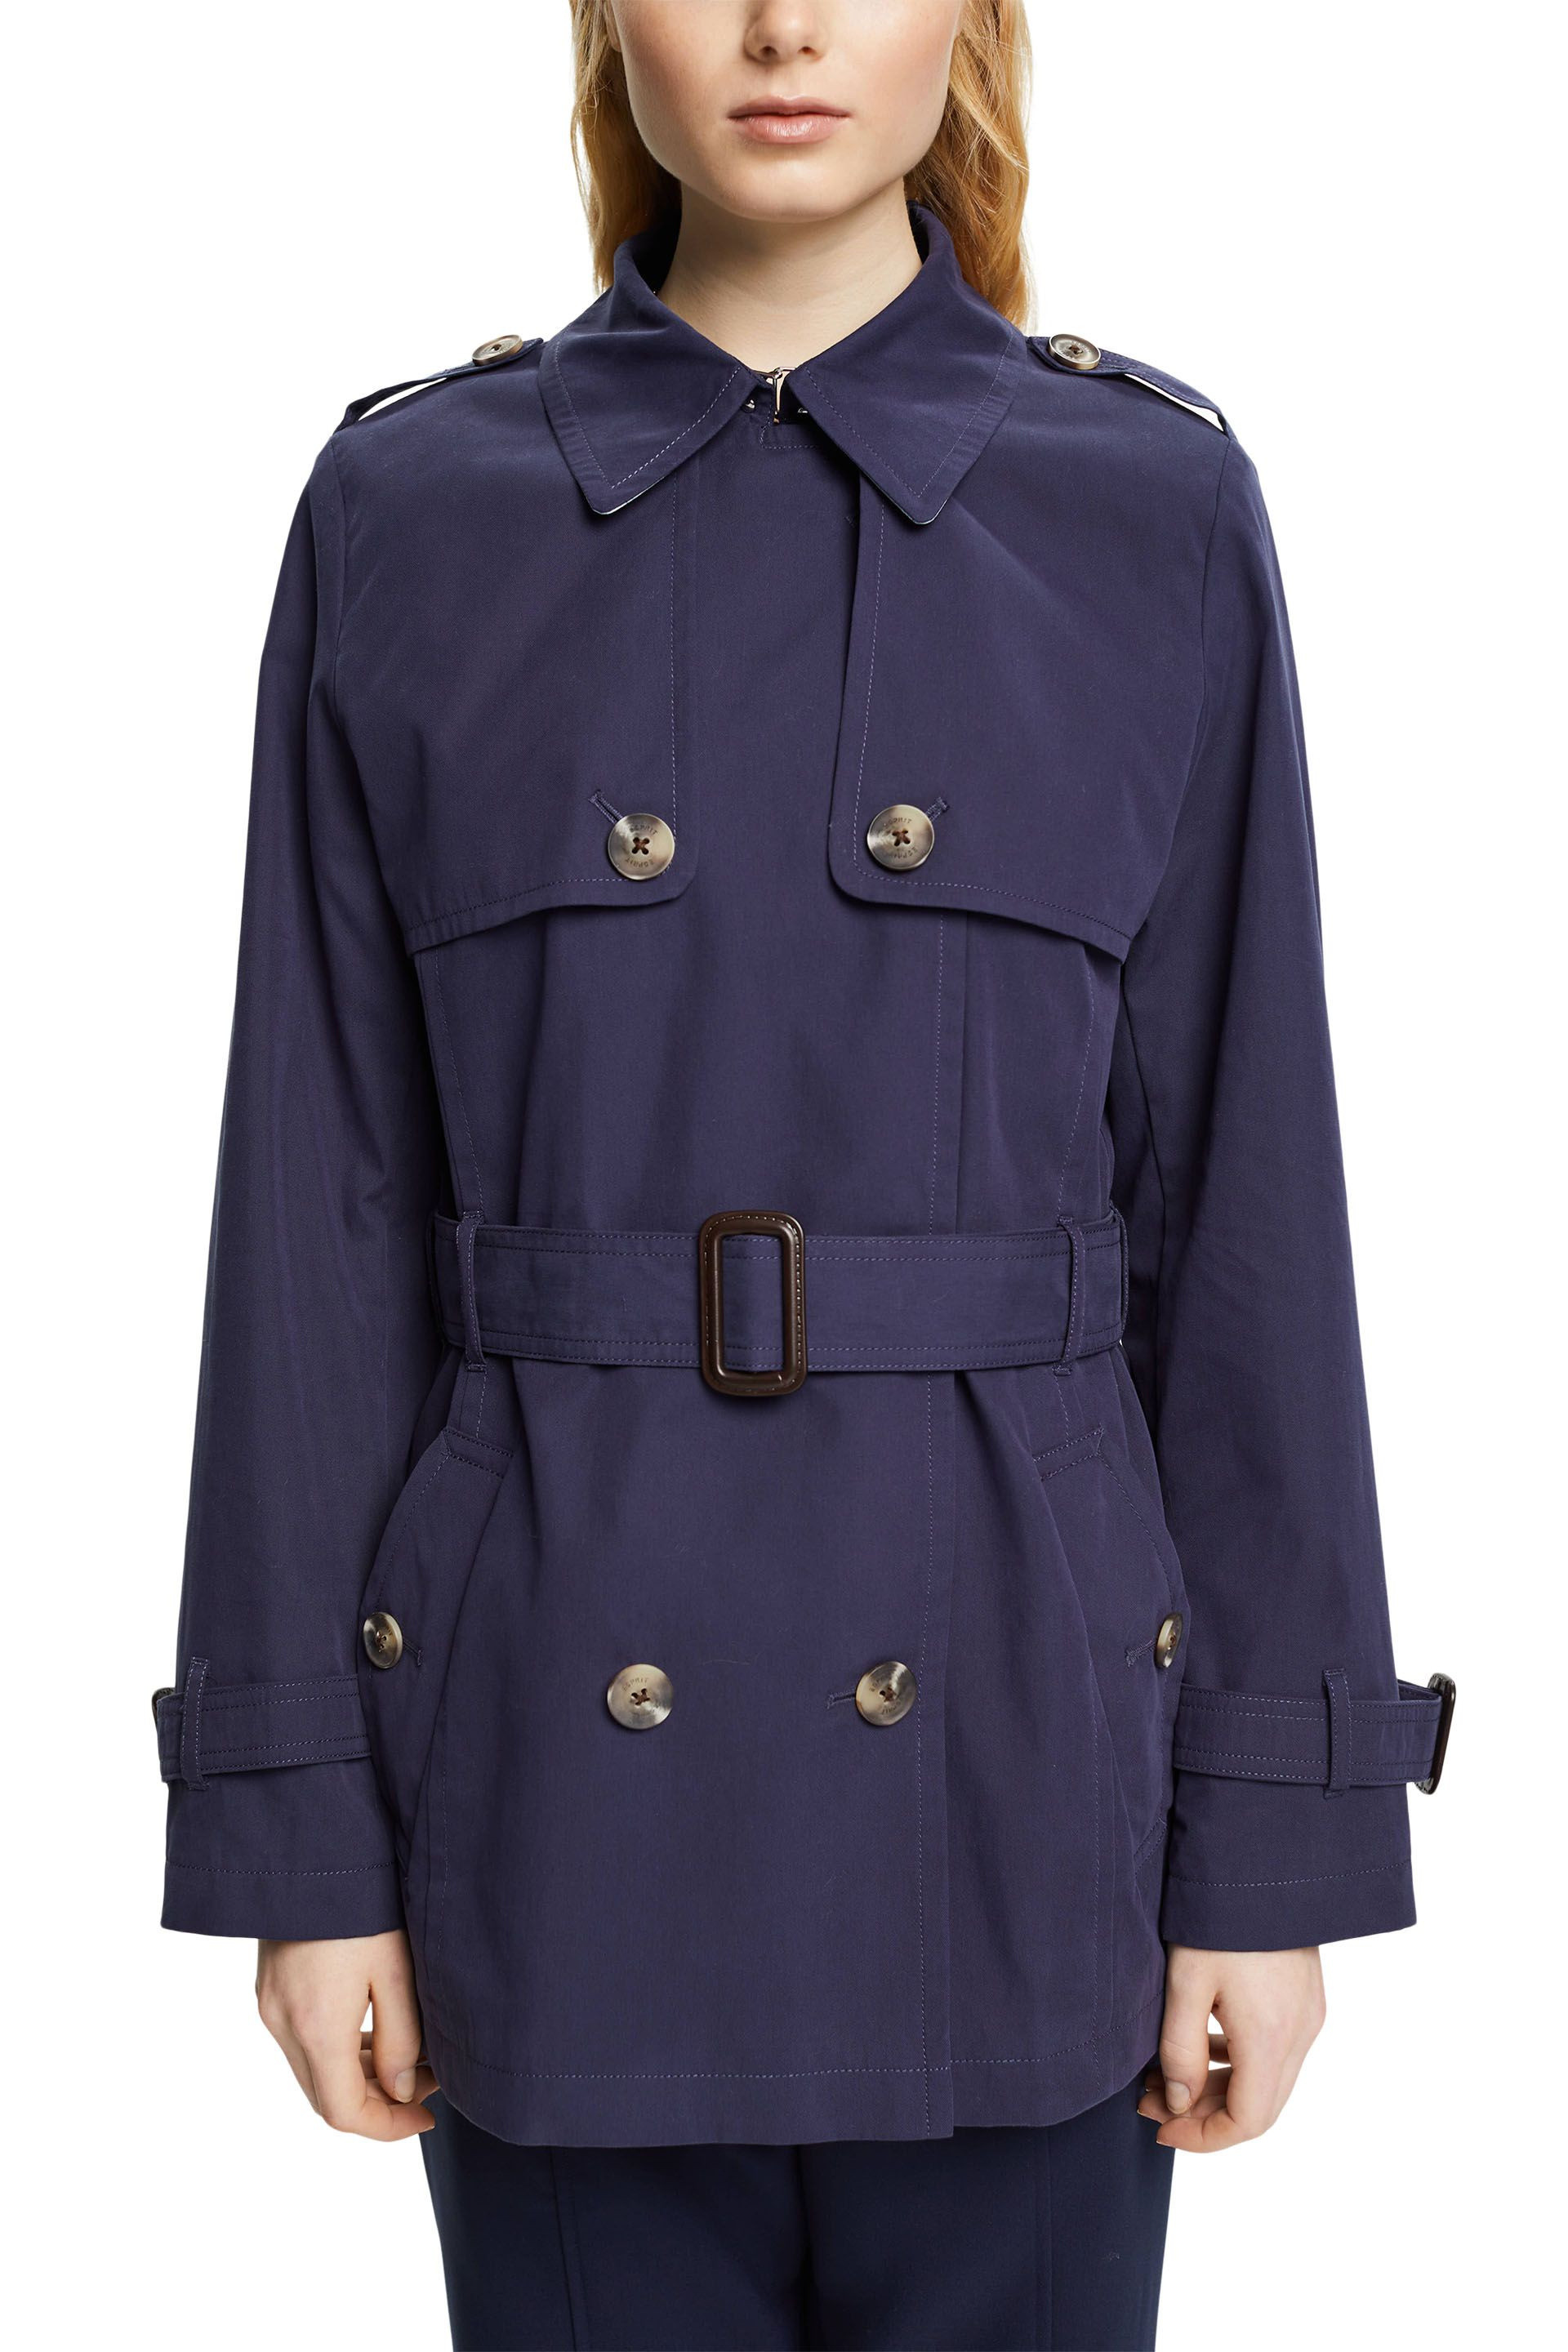 Esprit - Short trench coat with belt, Dark Blue, large image number 1